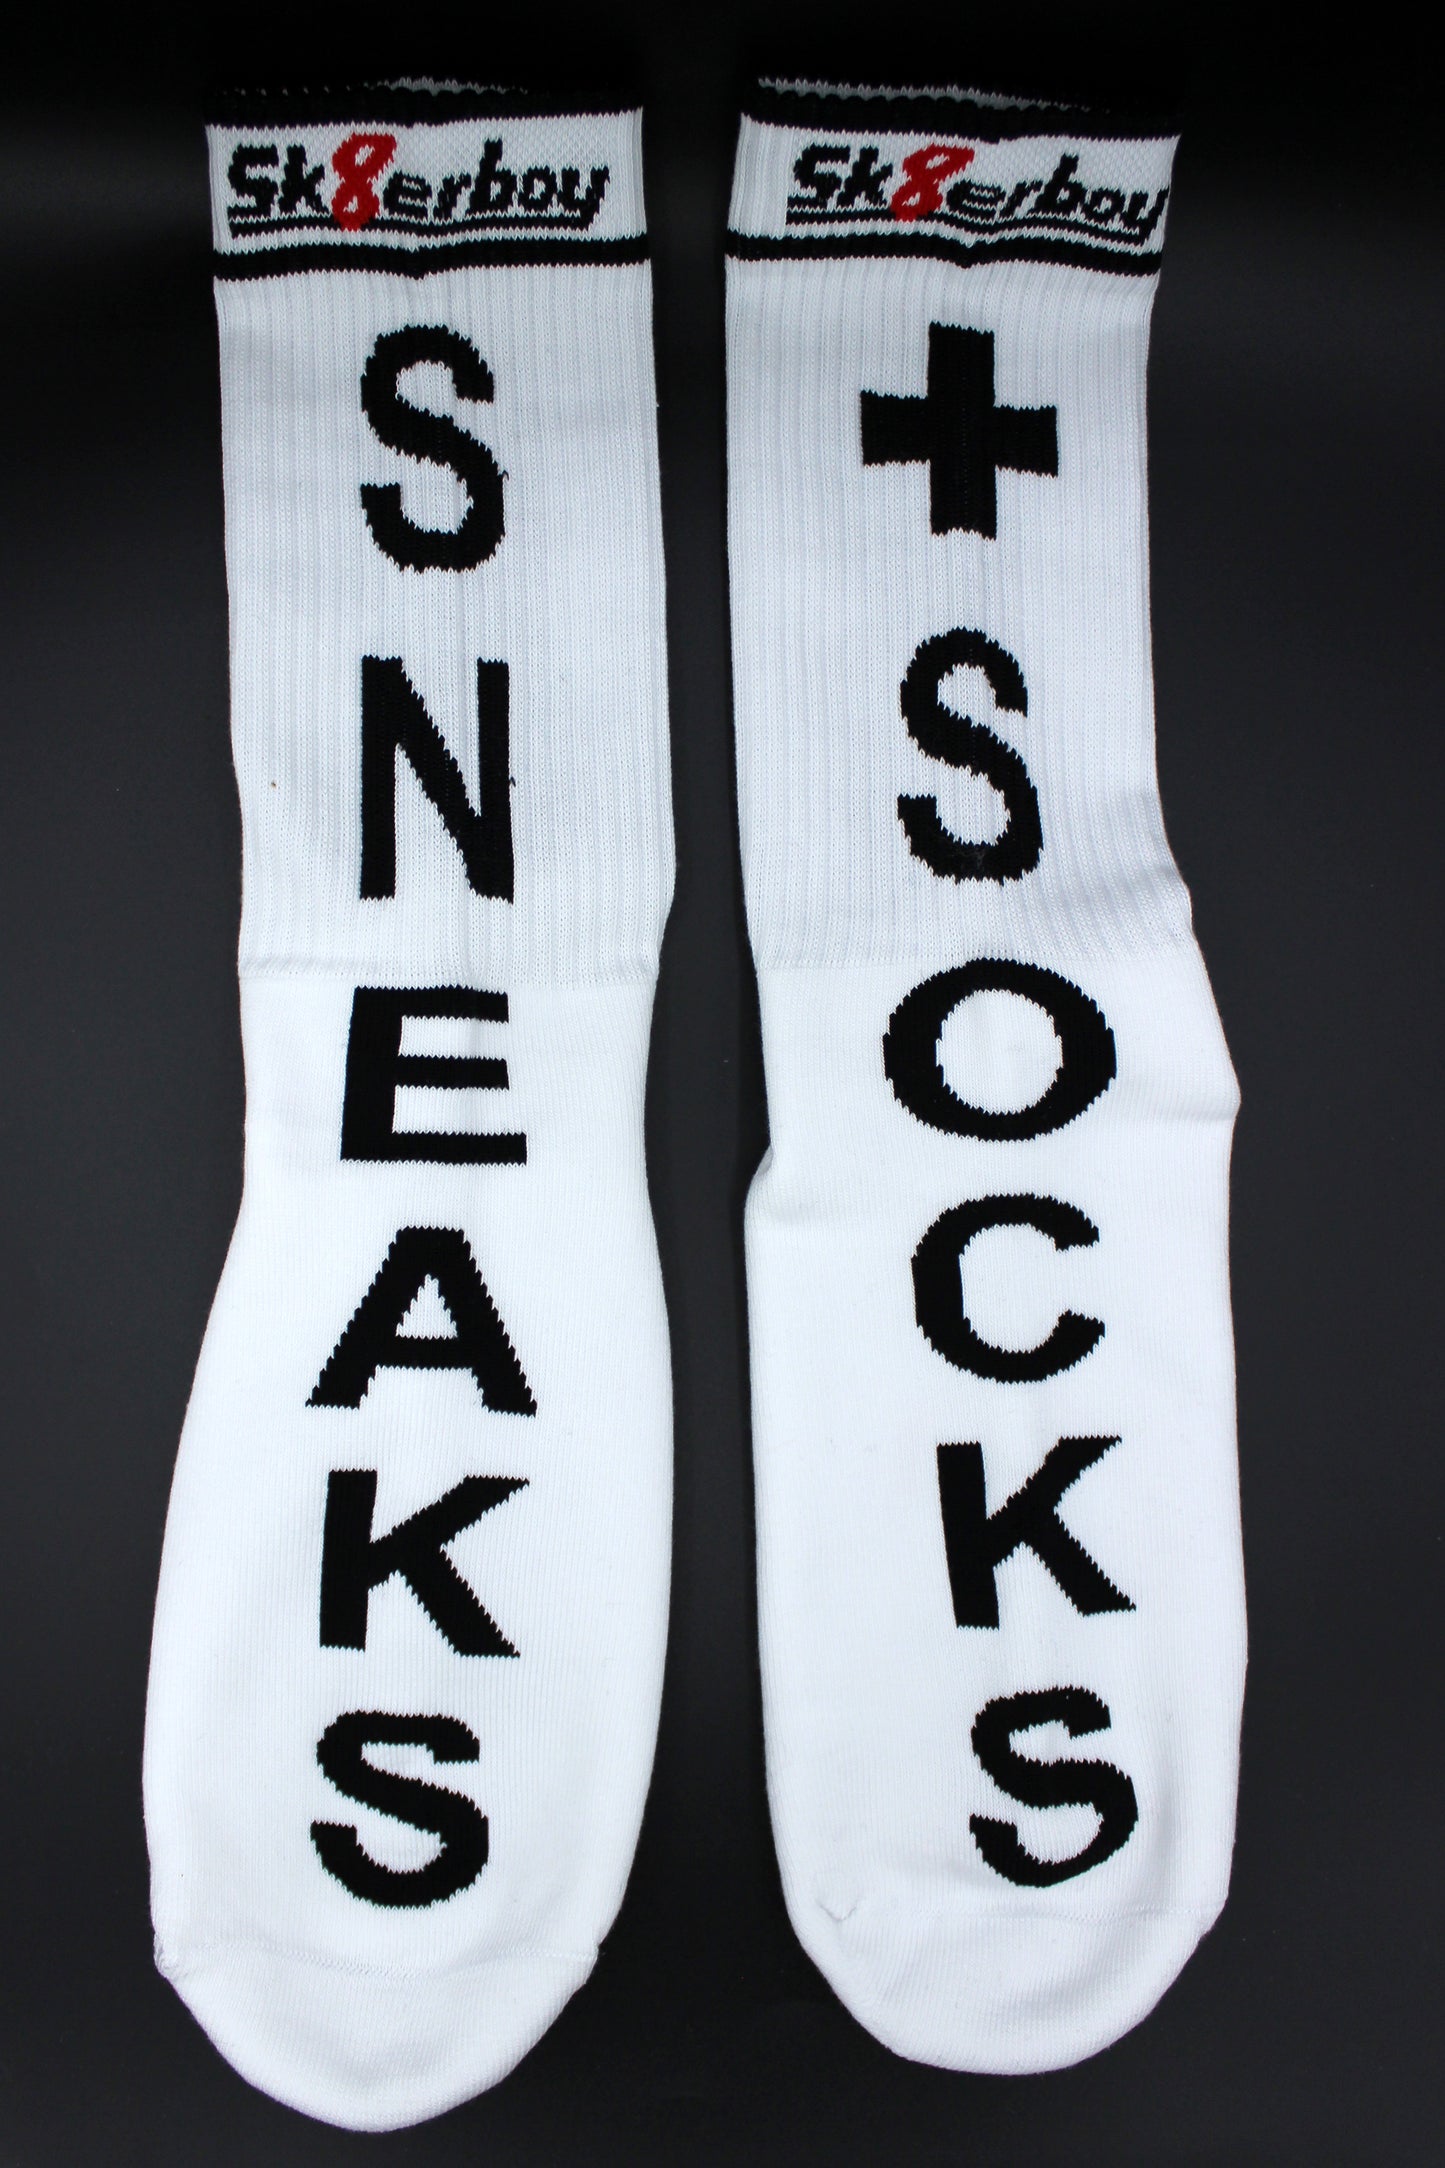 detailansicht der sk8erboy sneaks + socks socken fuer alle liebhaber von geilen sneakern und smelly socks mit großem schriftzug und logo auf der unterseite vorne und hinten